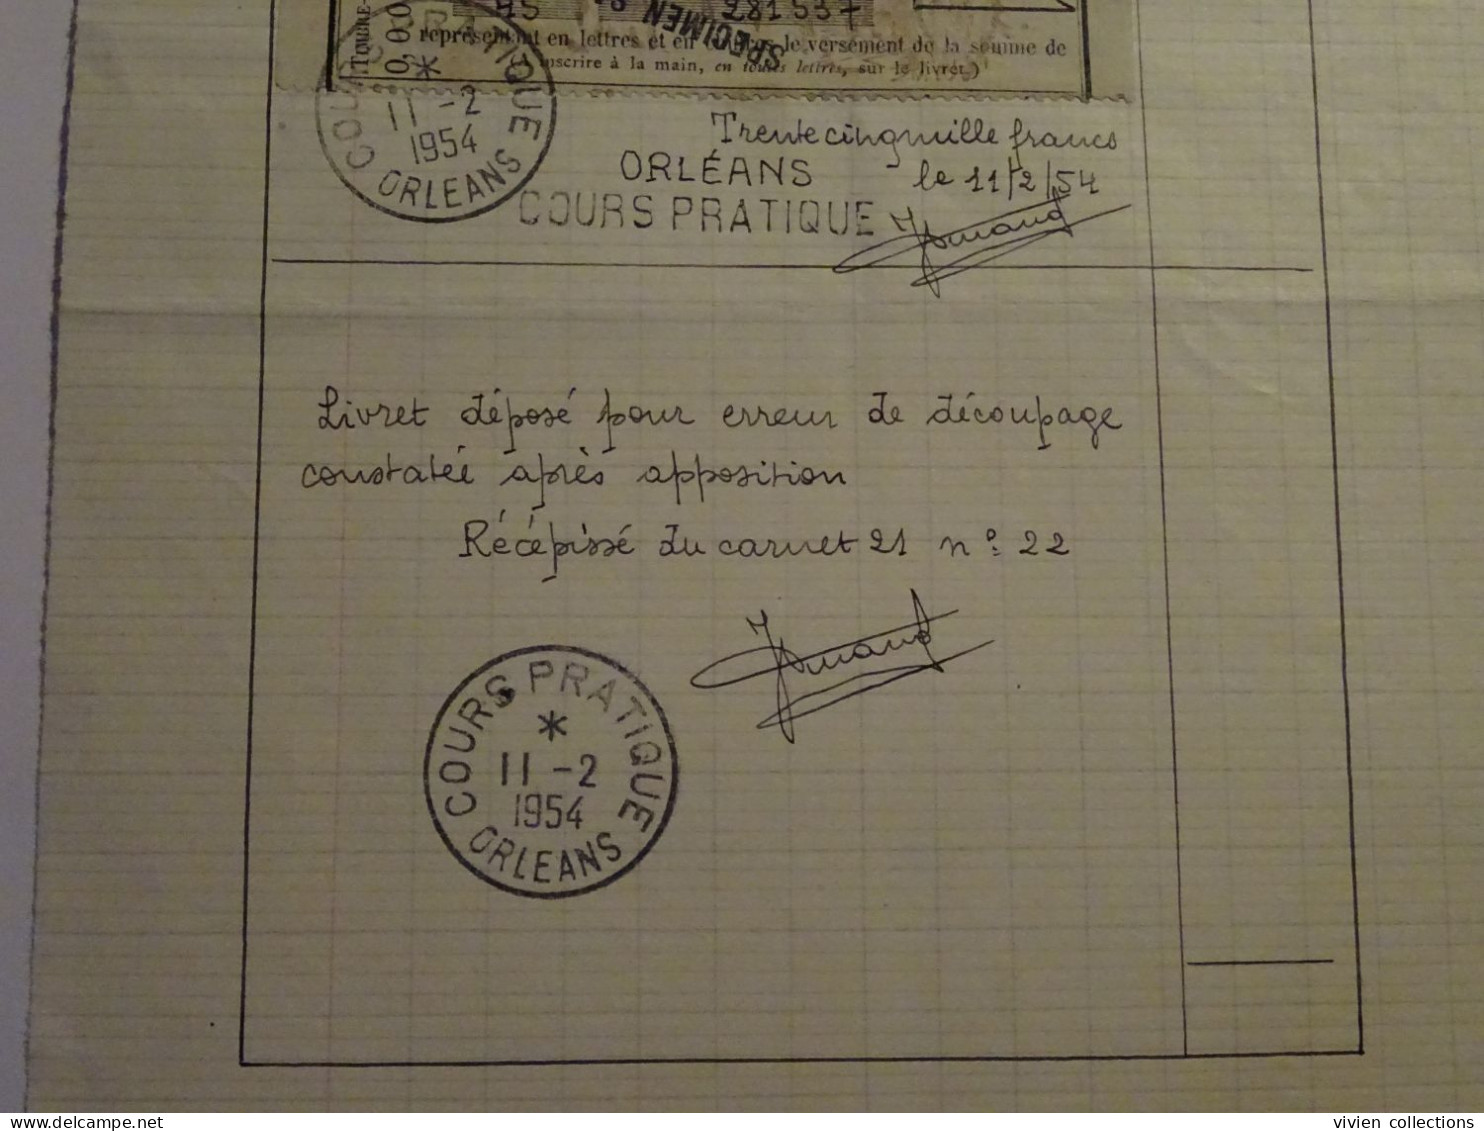 France cours pratique instruction Orléans 1954 erreur découpage constaté après apposition + corrigé livret CNE spécimen